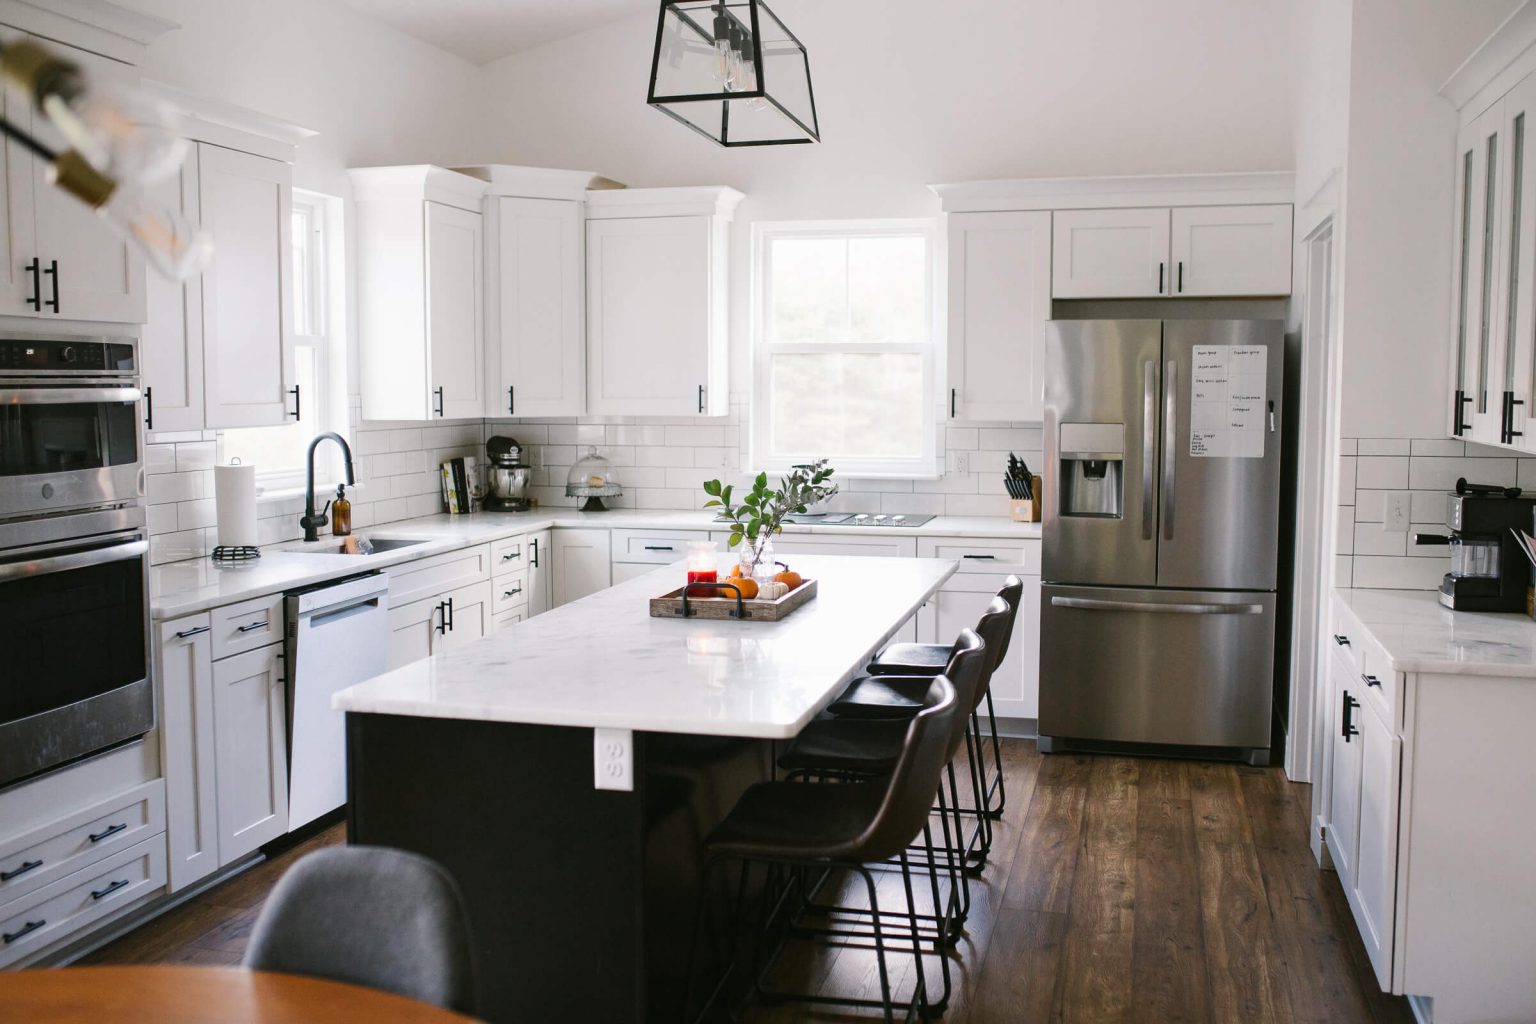 Modern White Kitchen Ideas: 10 Contemporary Kitchen Designs